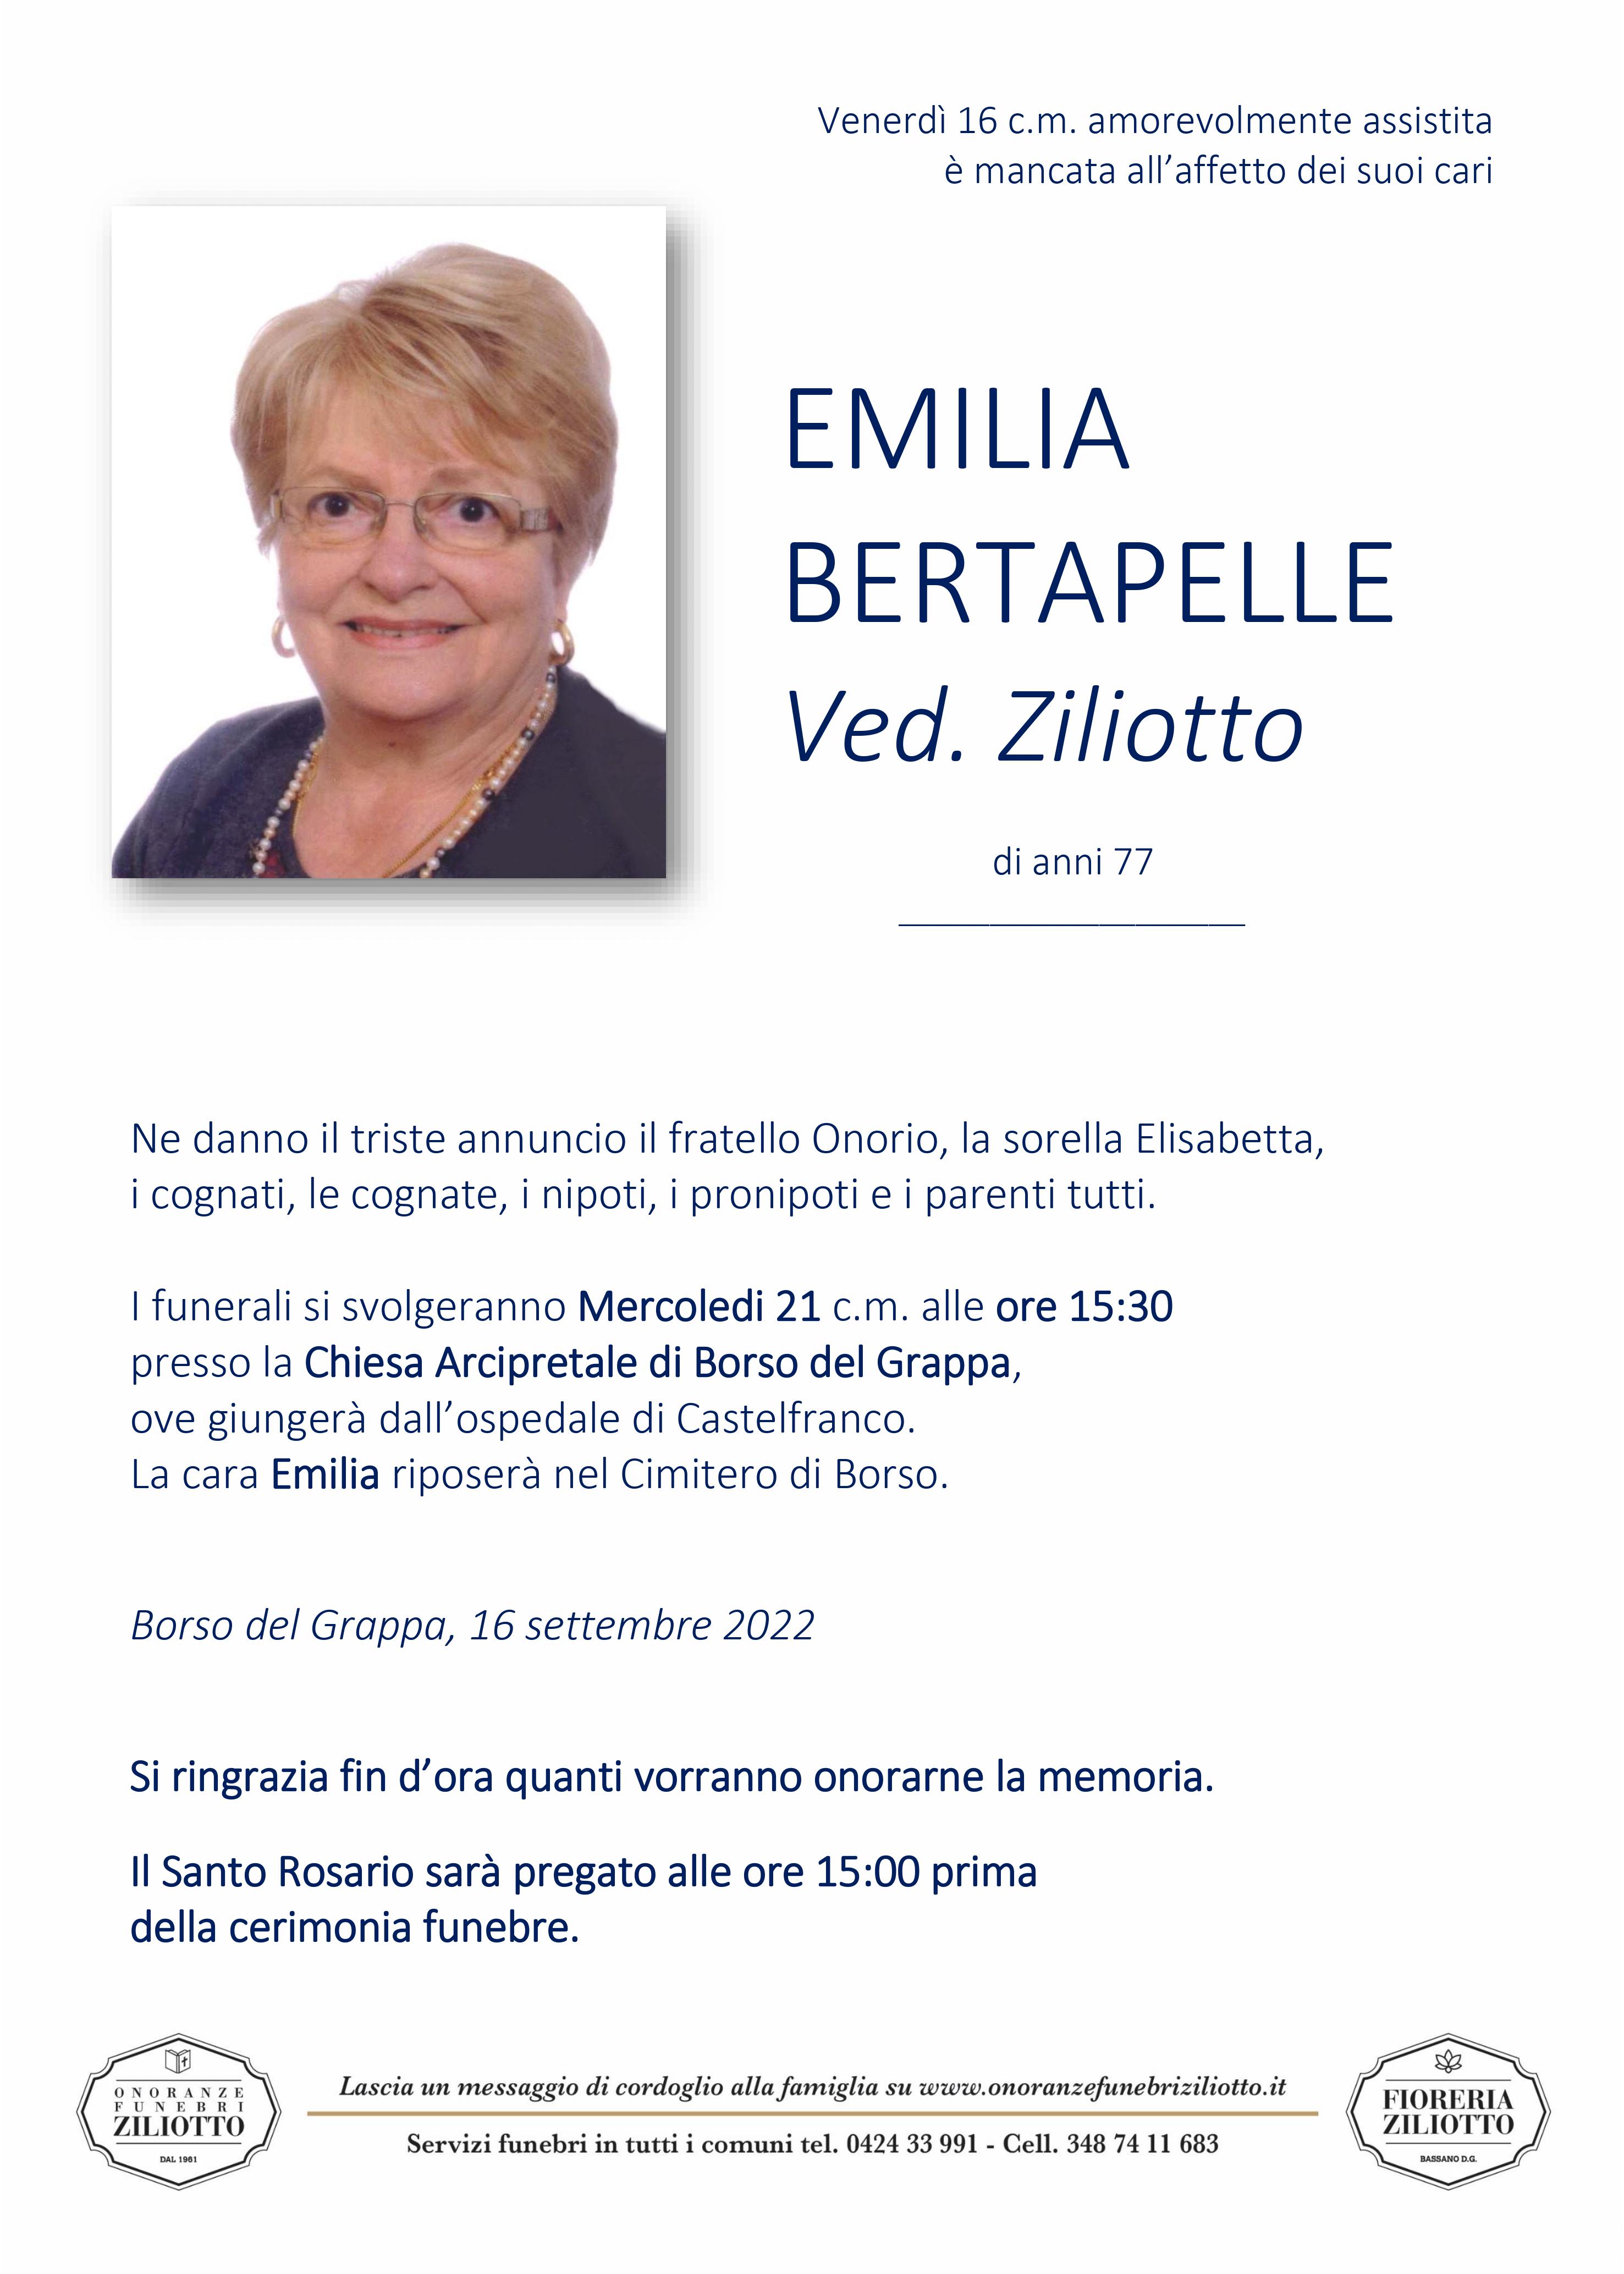 Emilia Bertapelle - 77 anni - Borso del Grappa